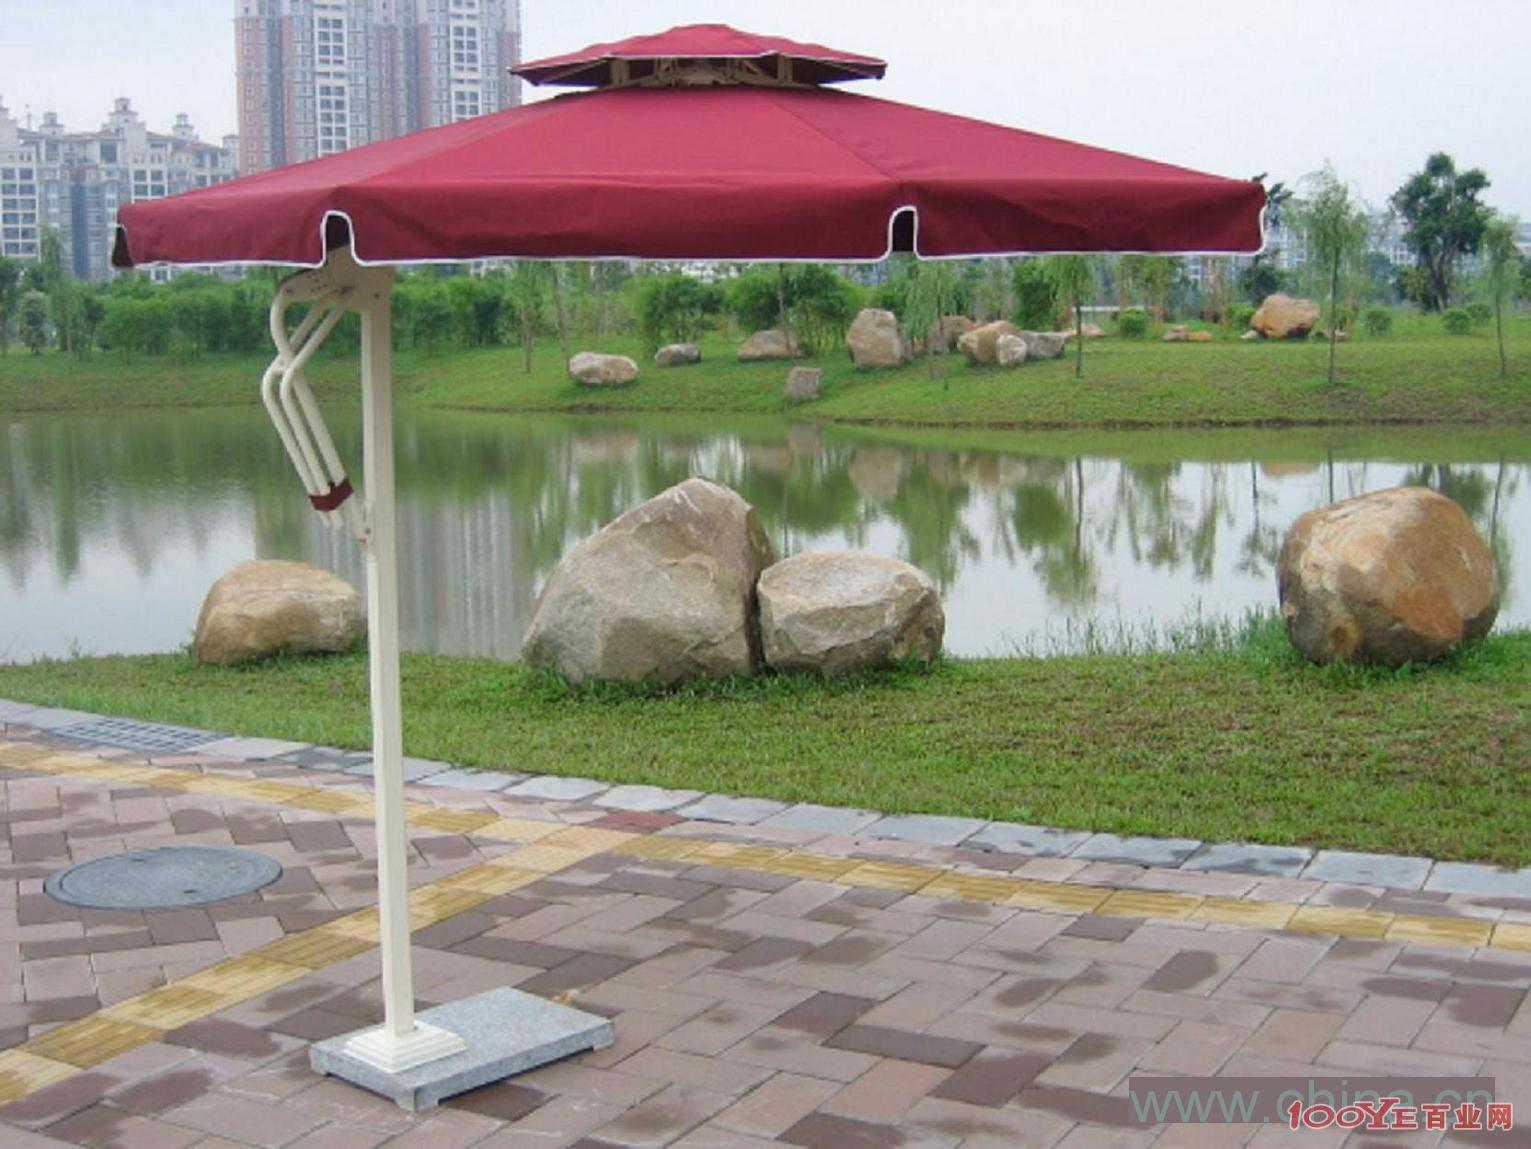 garden umbrella,cafe umbrella,